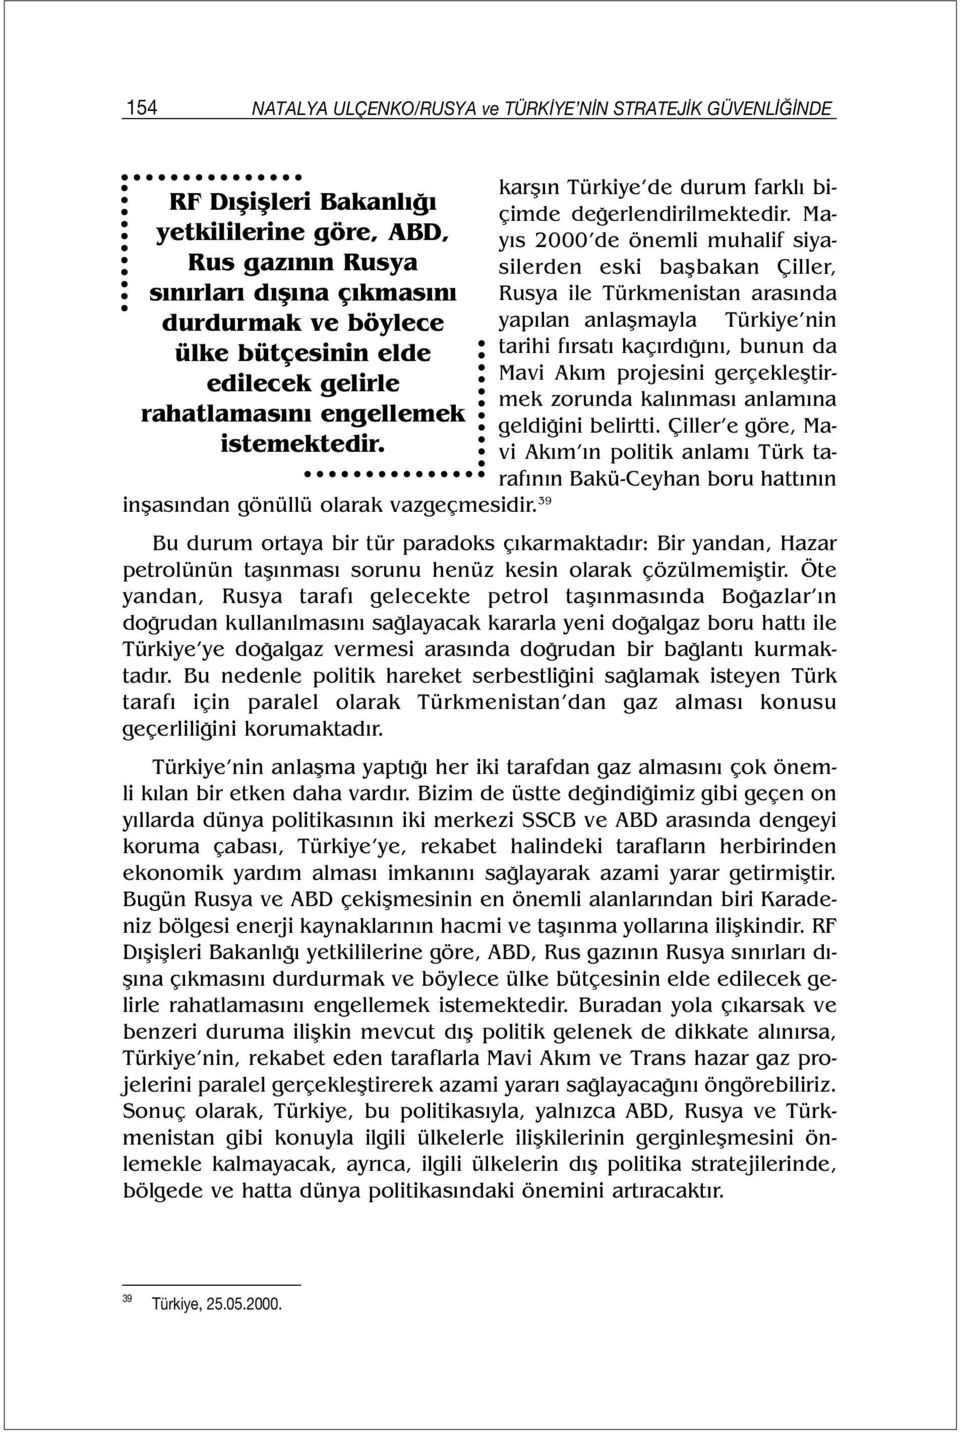 Mayıs 2000 de önemli muhalif siyasilerden eski başbakan Çiller, Rusya ile Türkmenistan arasında yapılan anlaşmayla Türkiye nin tarihi fırsatı kaçırdığını, bunun da Mavi Akım projesini gerçekleştirmek